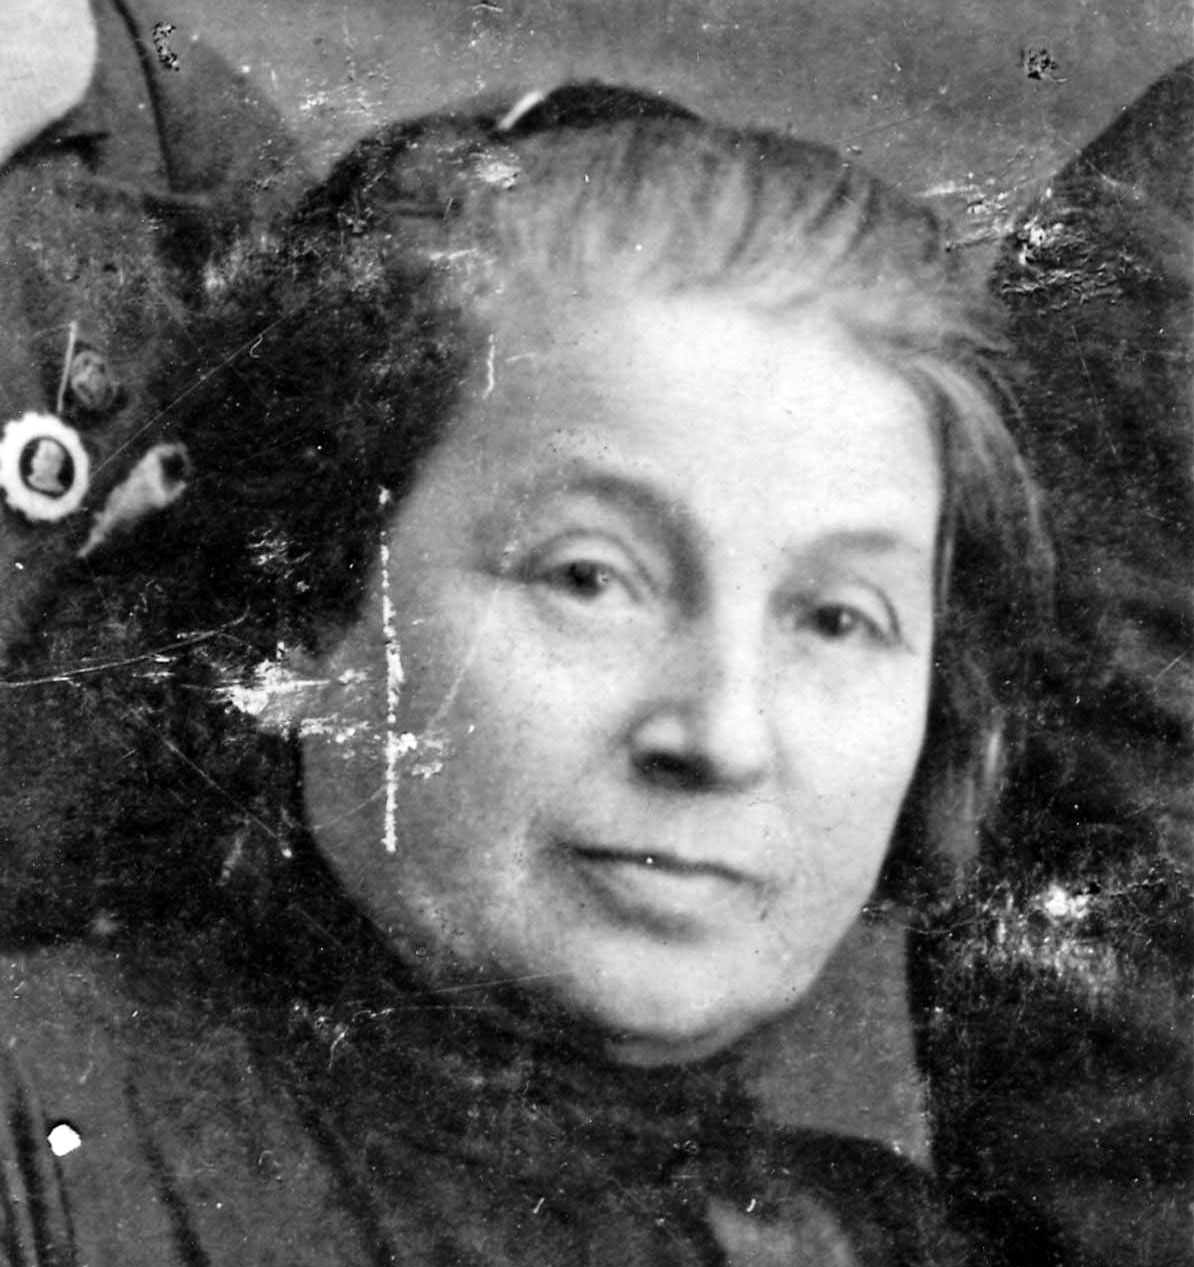 ברטה ליסיאנסקאיה נולדה ב-1887. היא התגוררה בקייב שבאוקראינה ונרצחה בספטמבר 1941 בבאבי יאר.